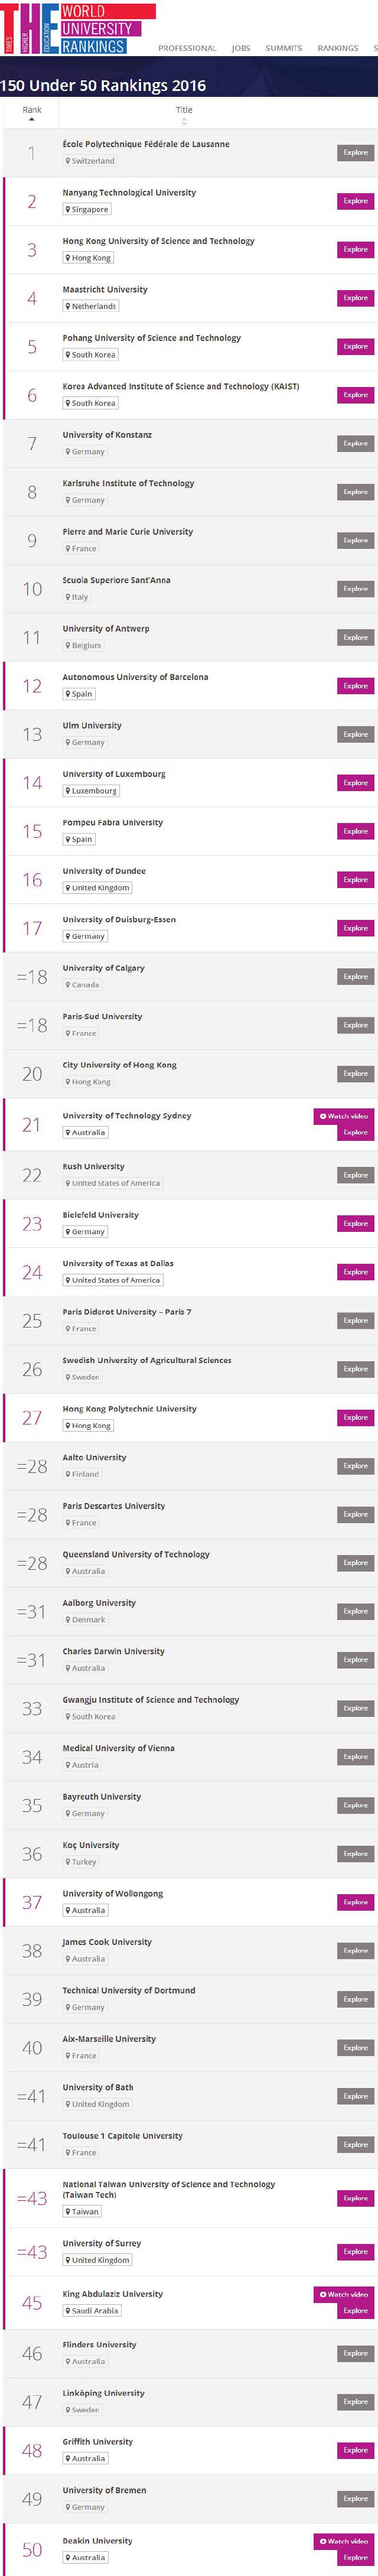 2016世界年轻大学排名前150名(泰晤士高等教育)